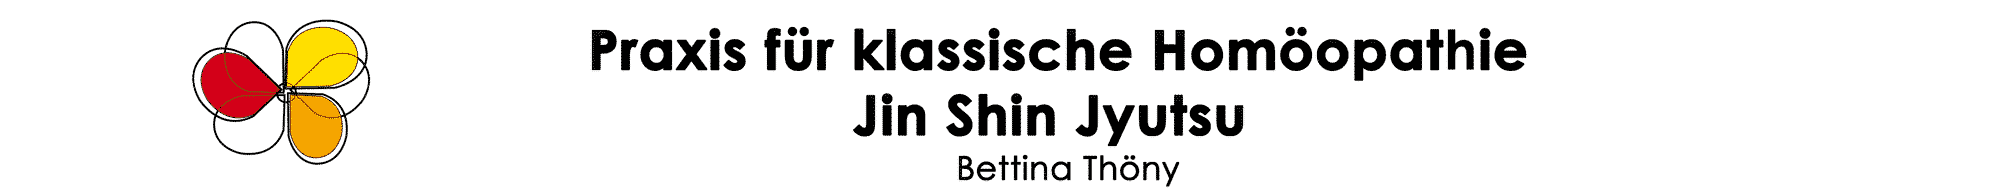 Praxis für klassische Homöopathie und Jin Shin Jyutsu